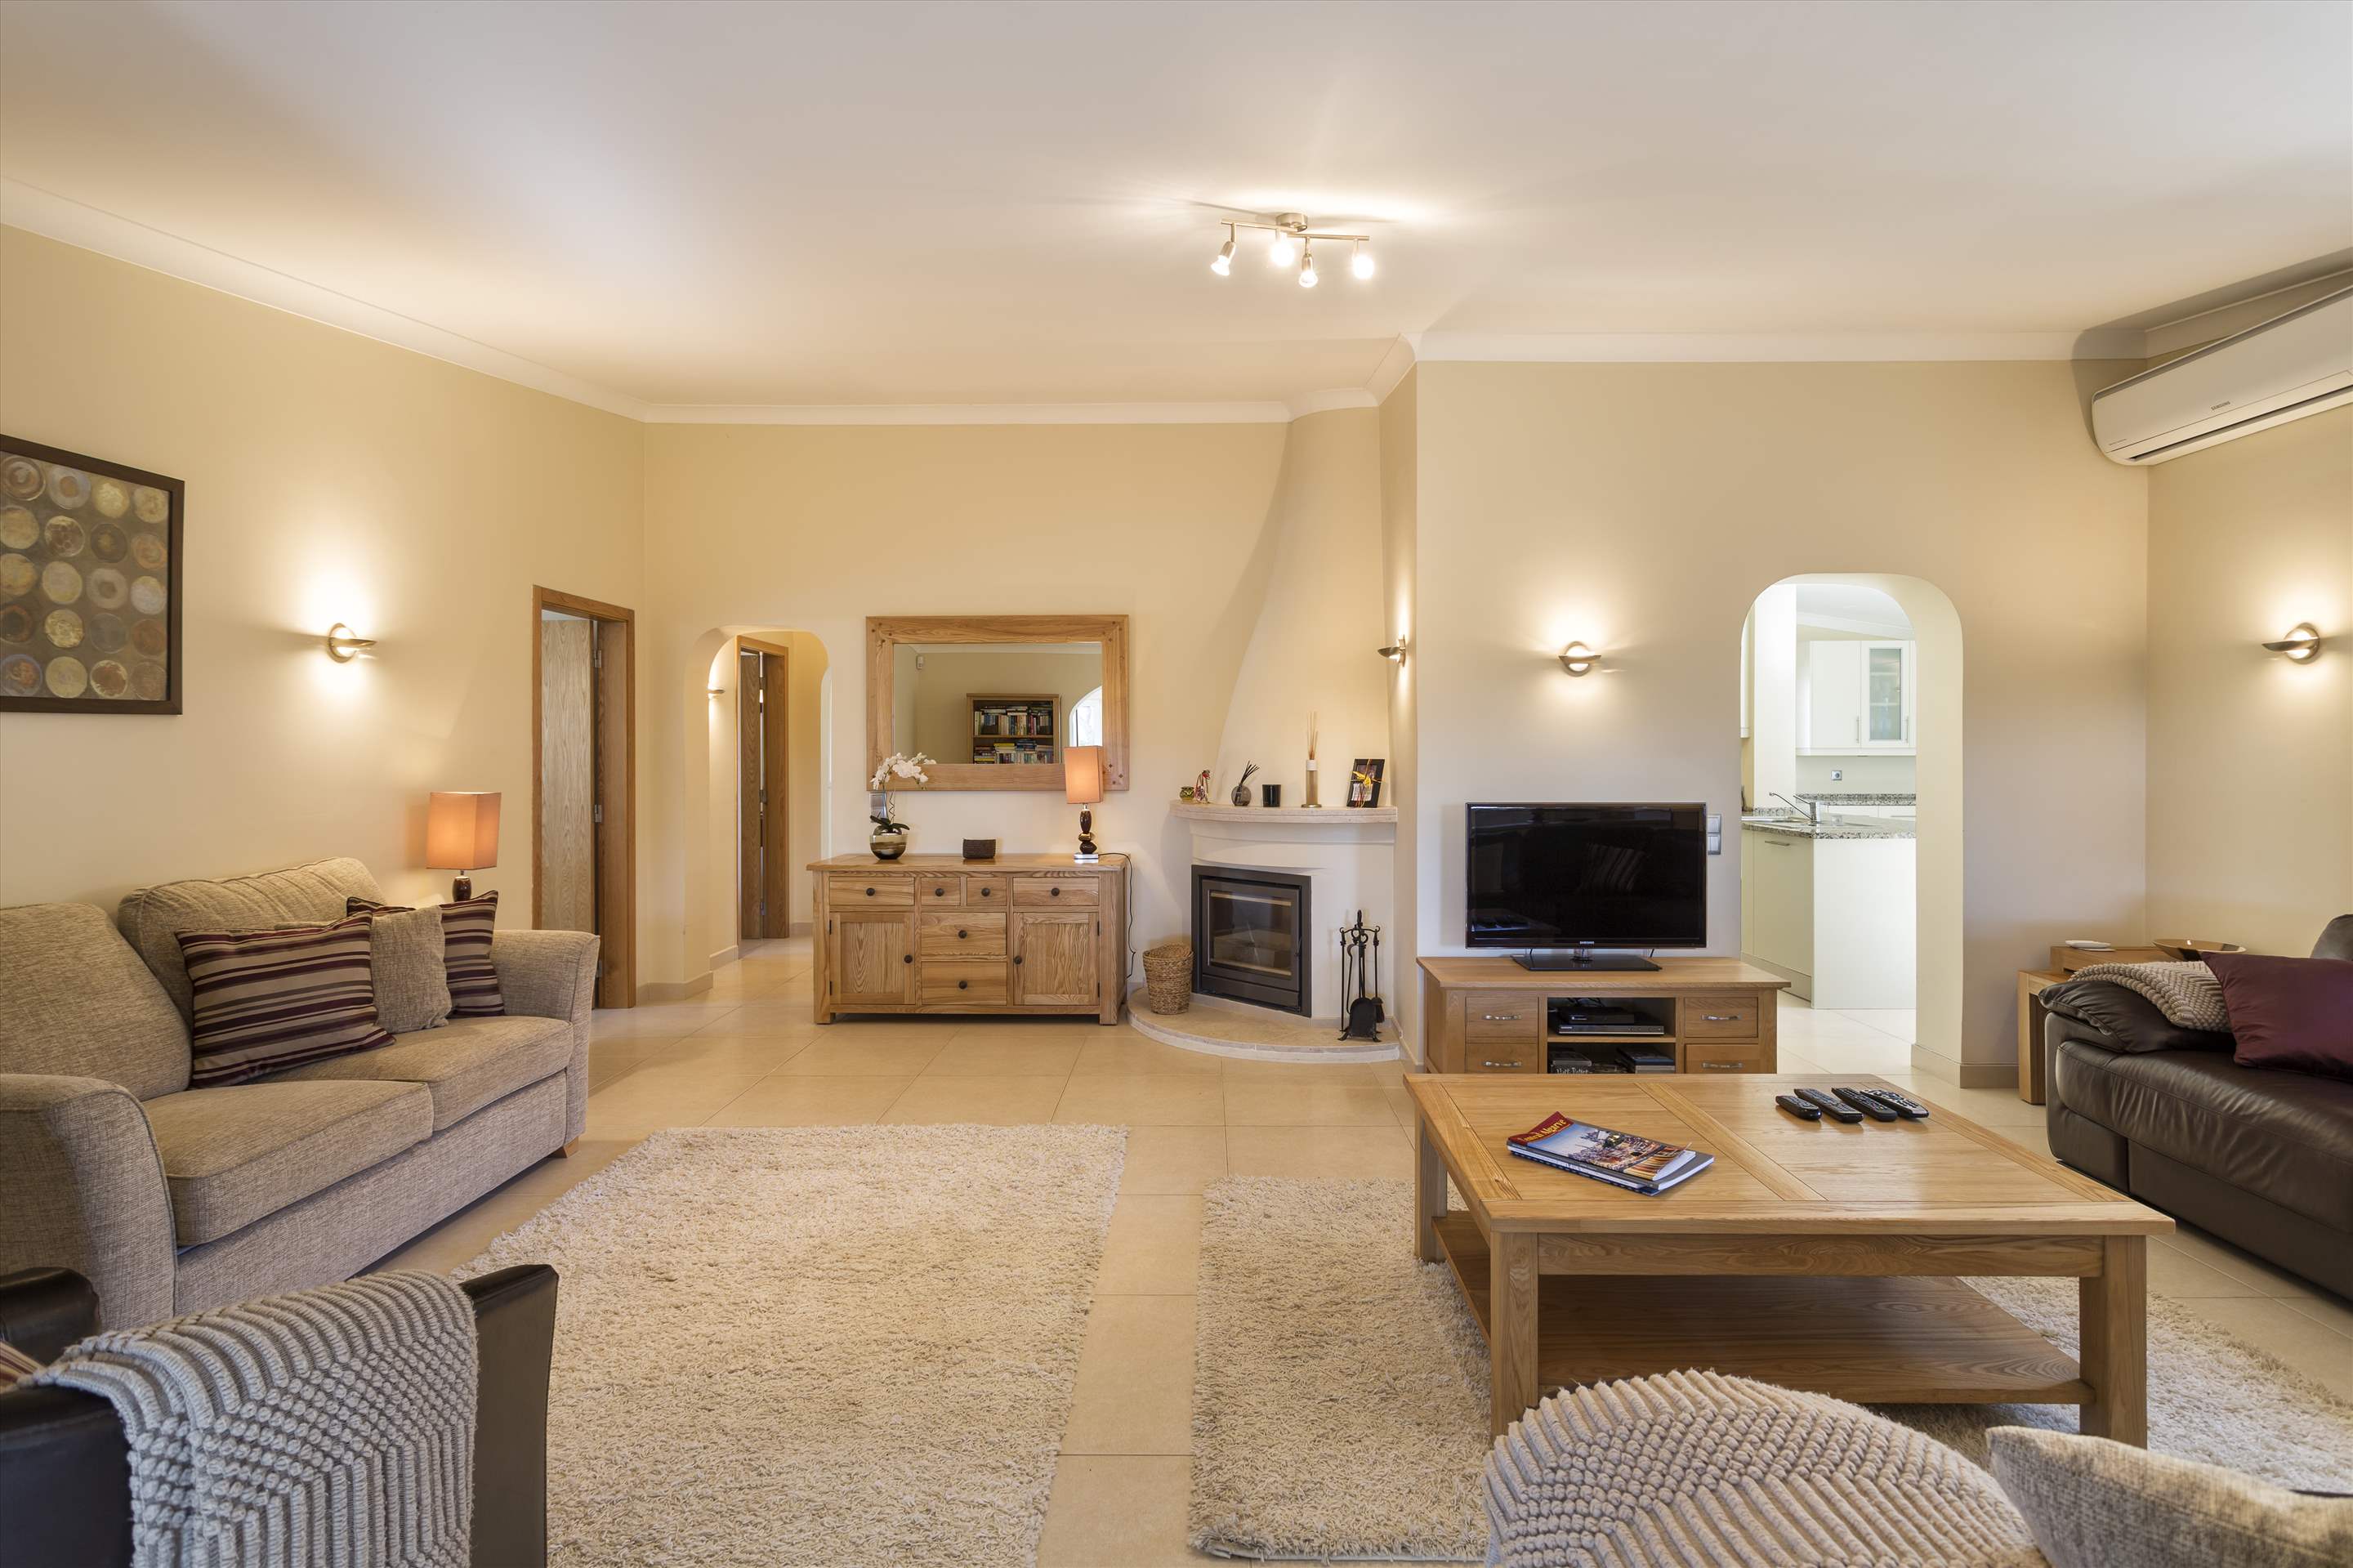 Casa Blanca, 3 Bed Rental, 3 bedroom villa in Vale do Lobo, Algarve Photo #3